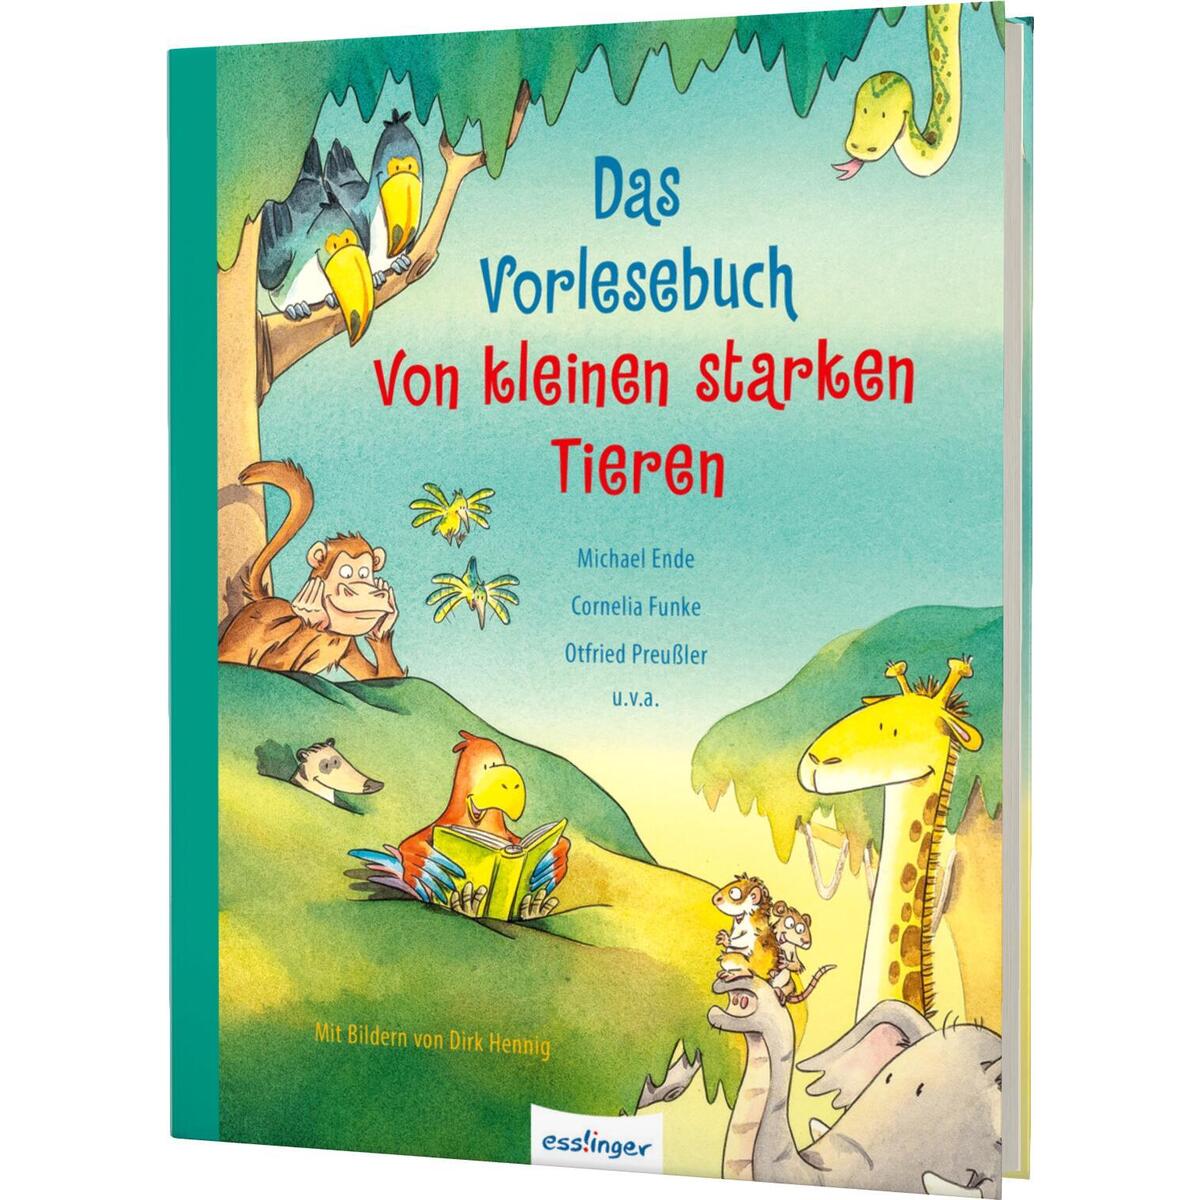 Das Vorlesebuch von kleinen starken Tieren von Esslinger Verlag